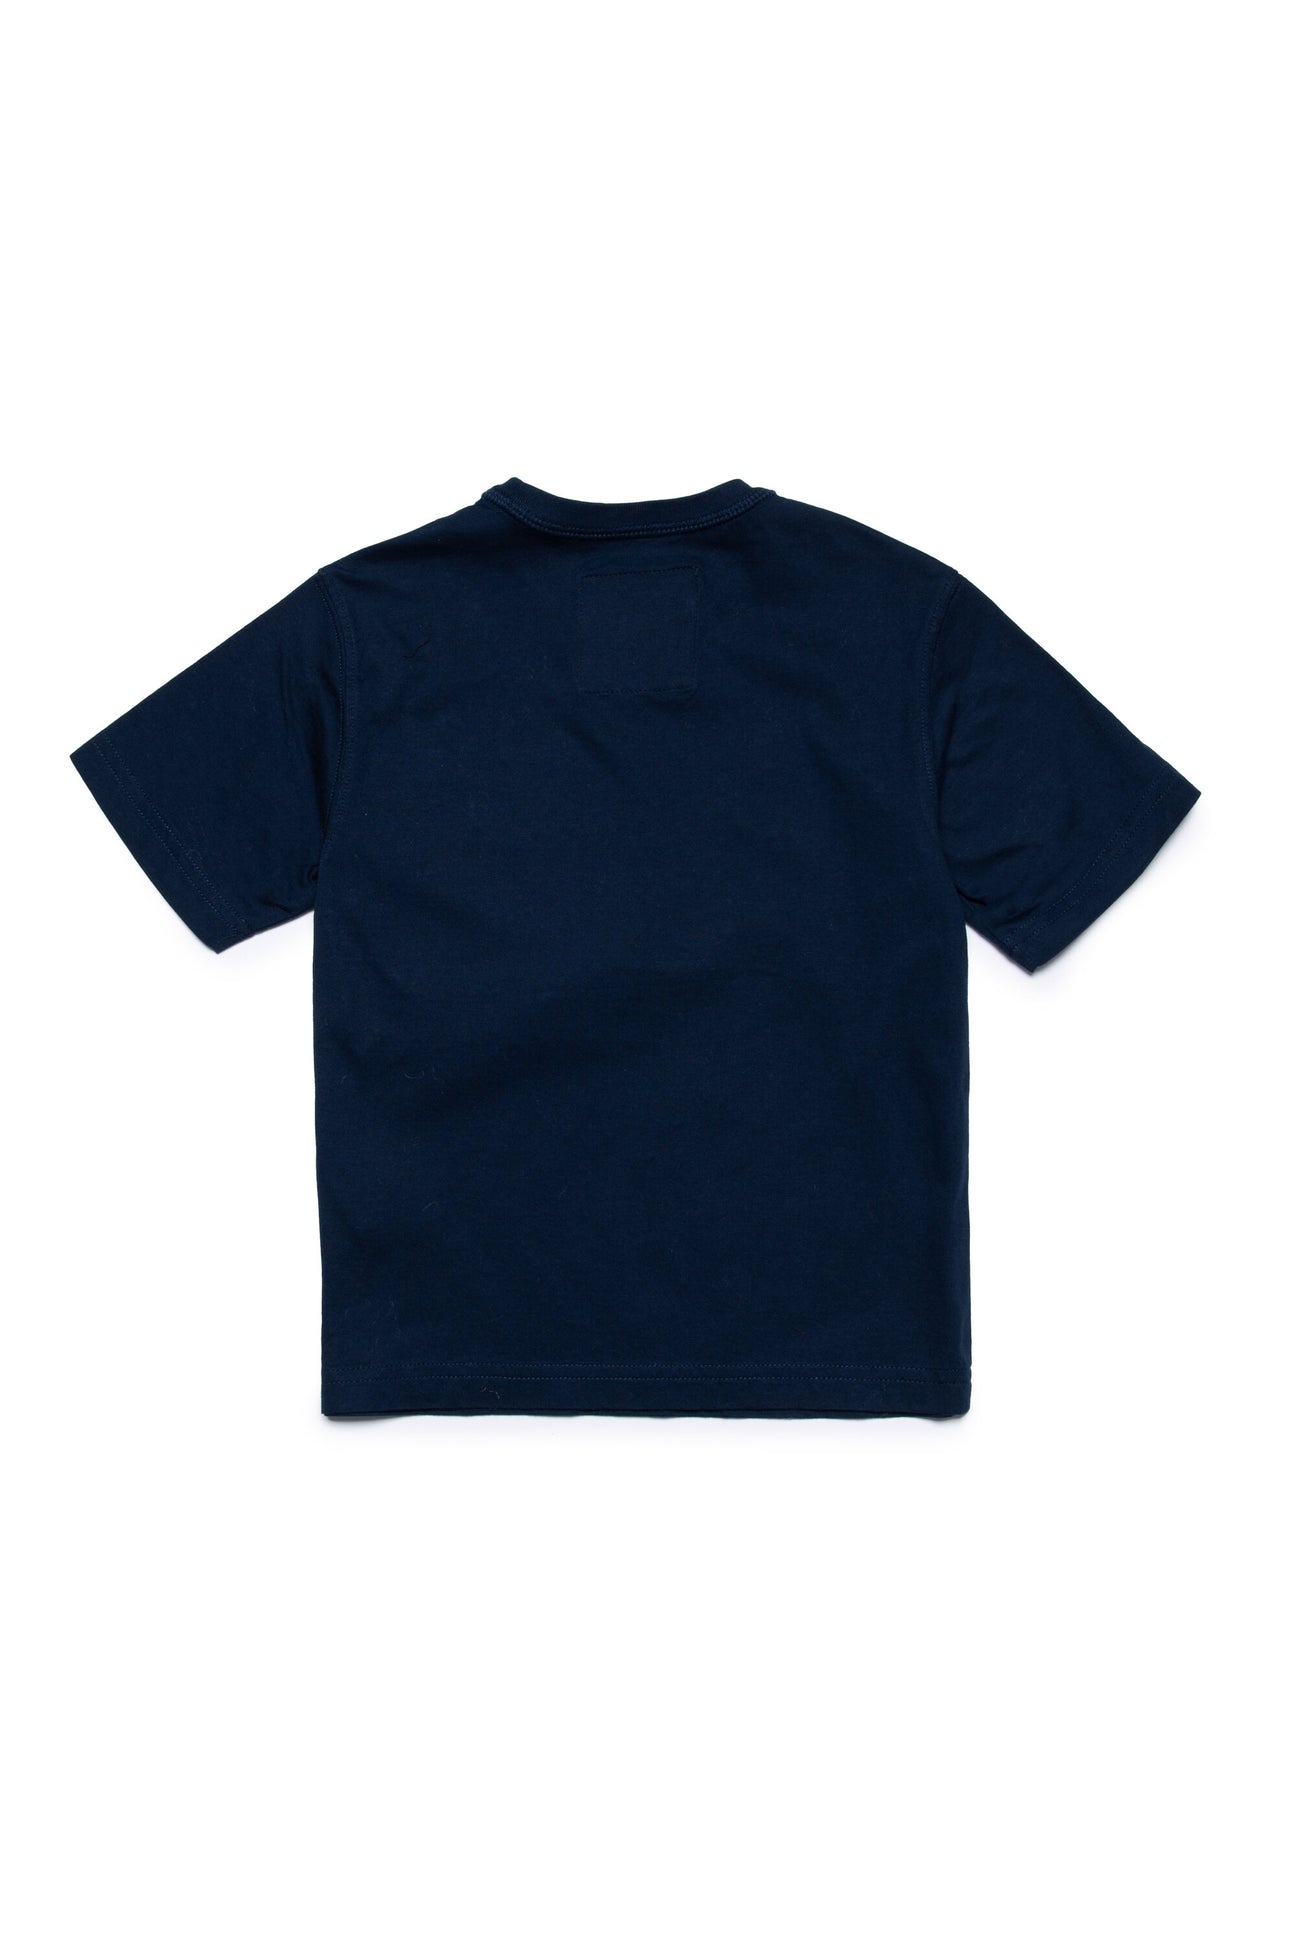 Camiseta en tejido Deadstock con bolsillo aplicado Camiseta en tejido Deadstock con bolsillo aplicado